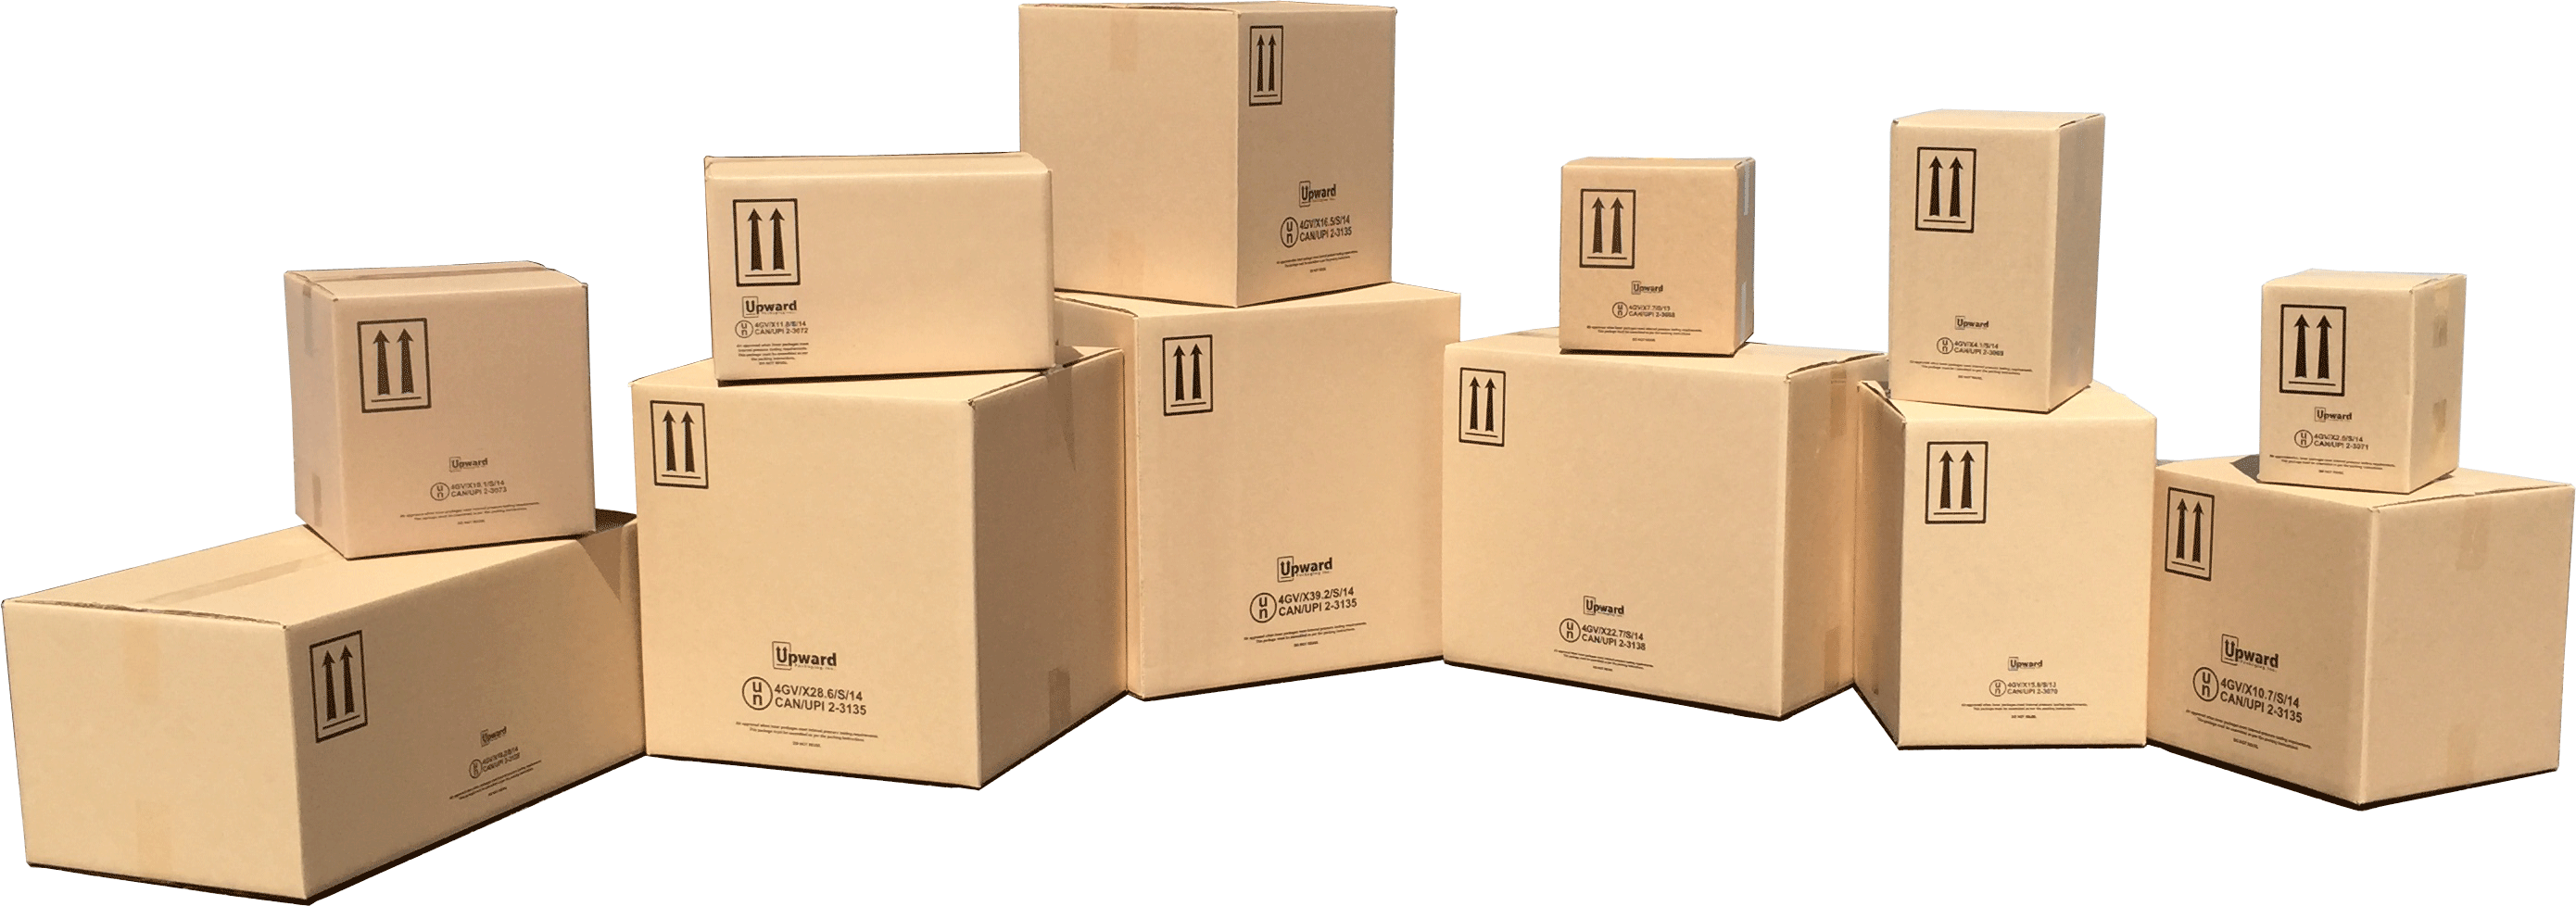 4GV UN Boxes | 4G UN Boxes | Custom UN Boxes & Kits